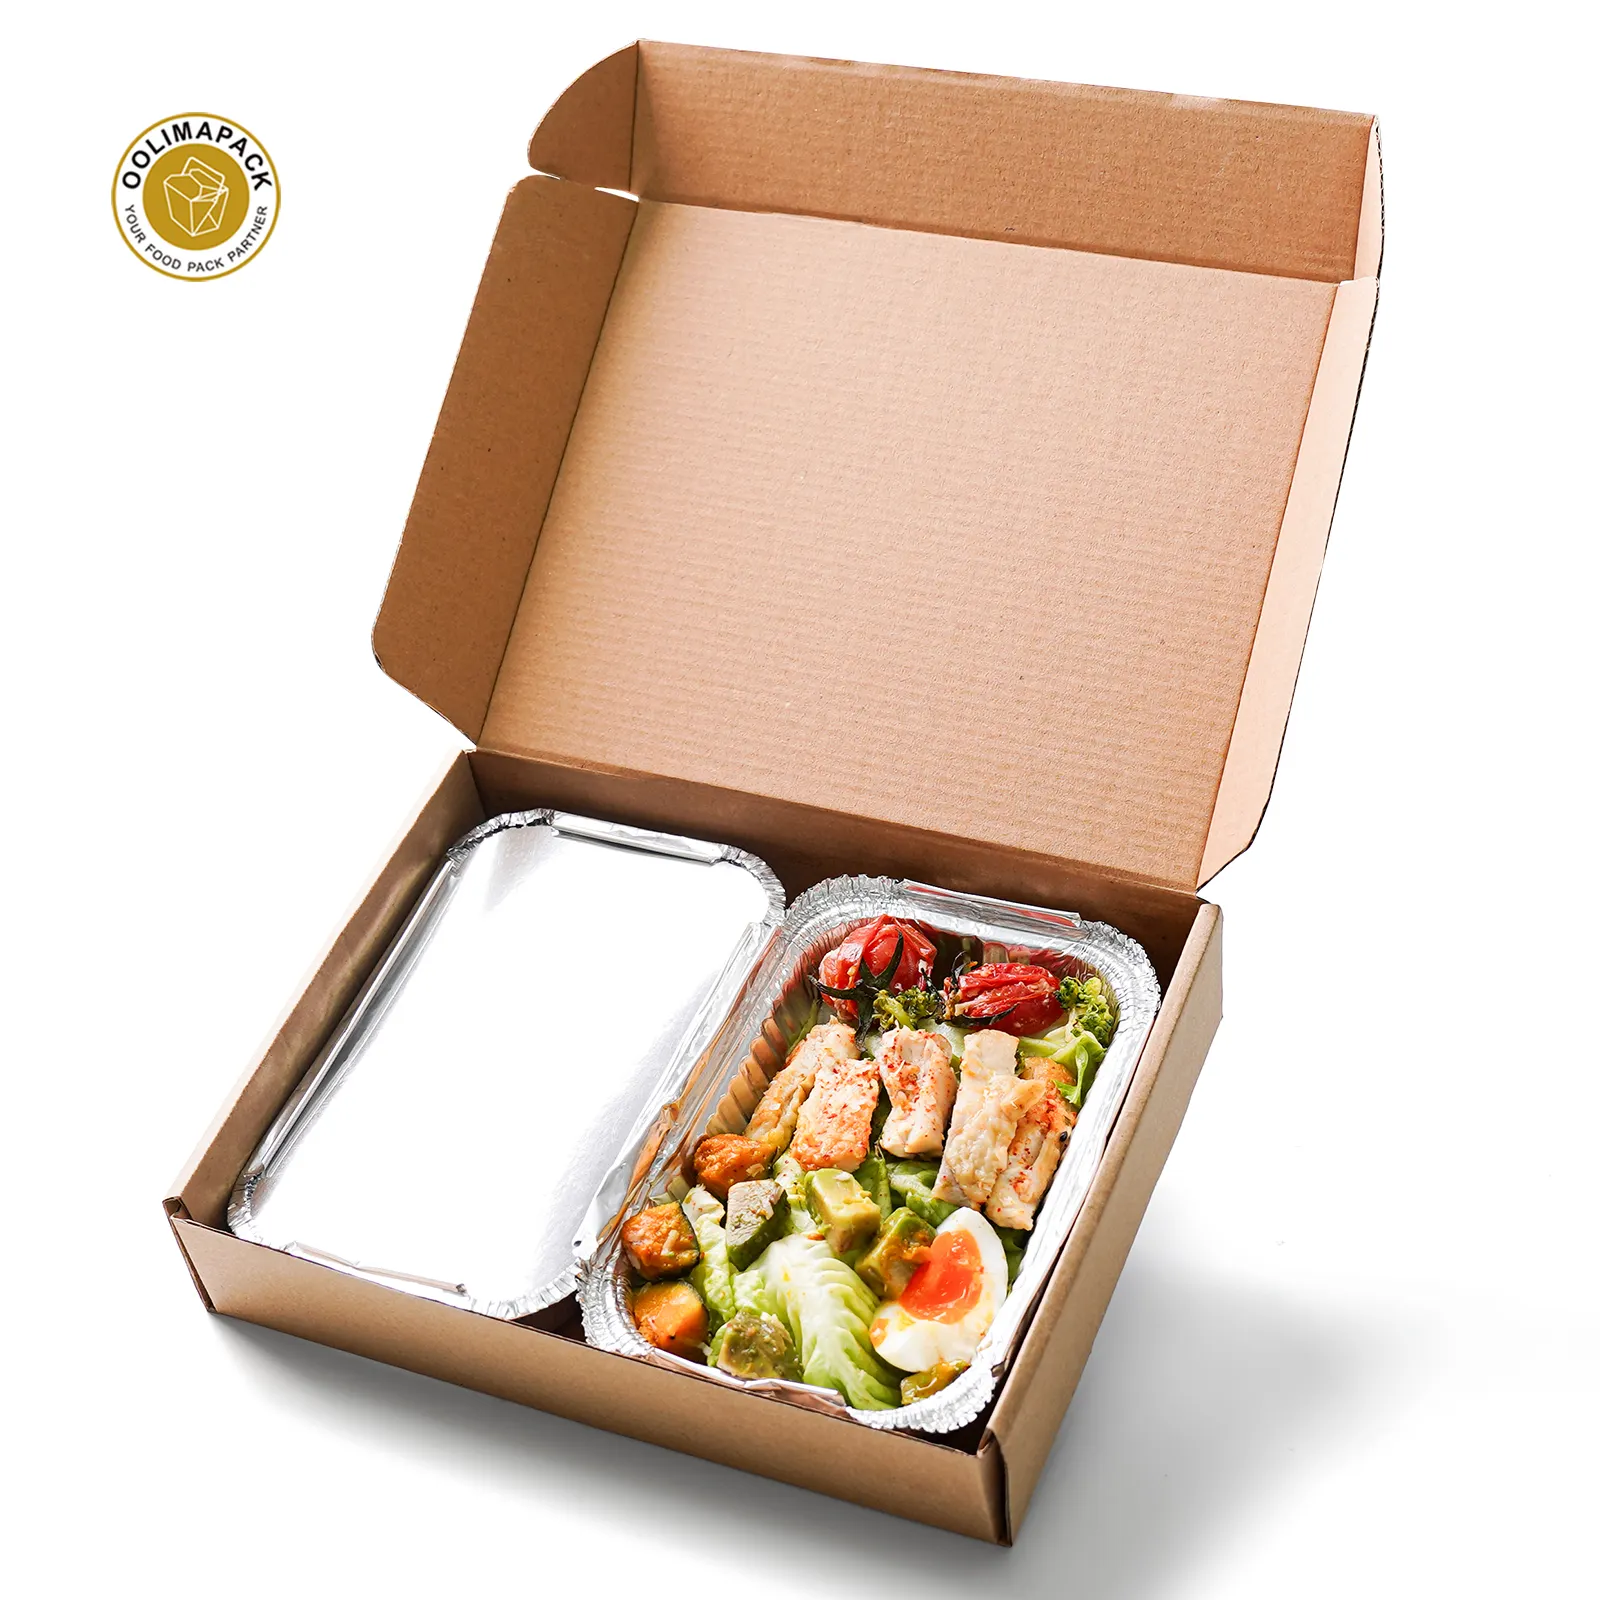 Oolimapack Custom Gegolfde Catering Food Box Verpakking Bruine Kraft Verpakking Catering Doos